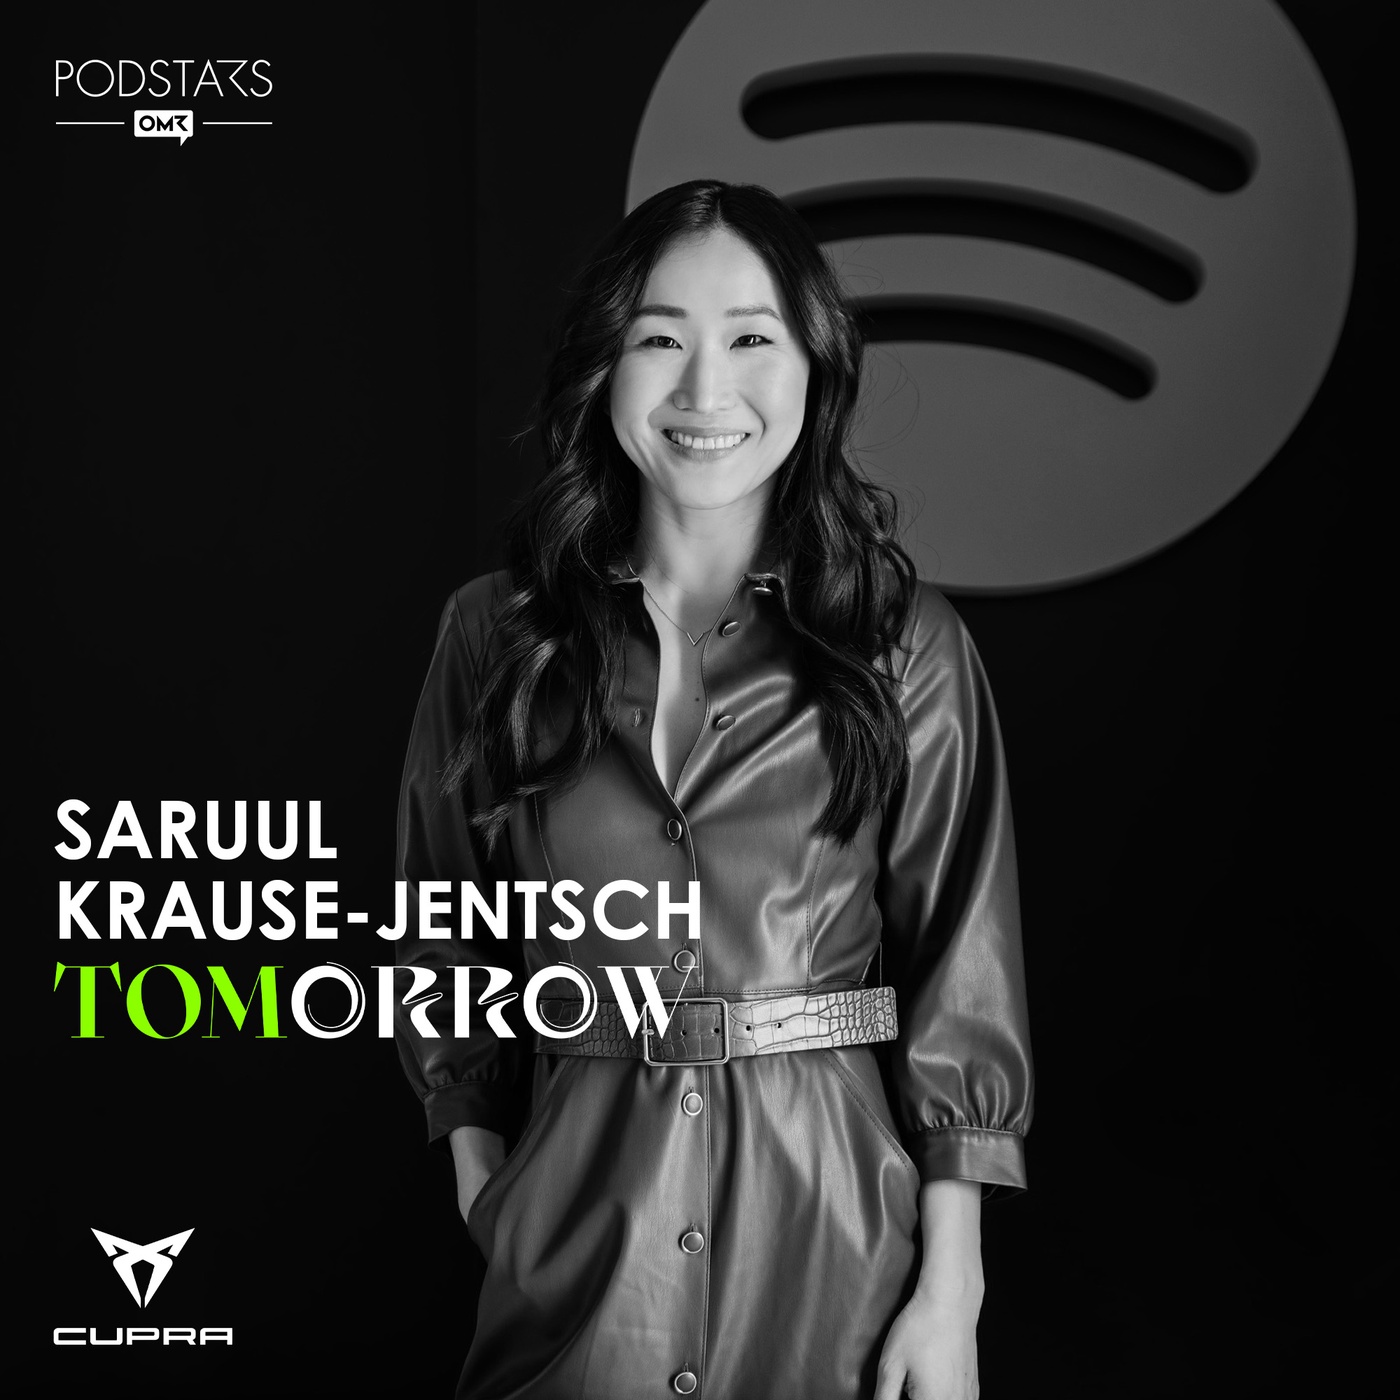 Das Milliarden-Business Spotify: Mit Saruul Krause-Jentsch